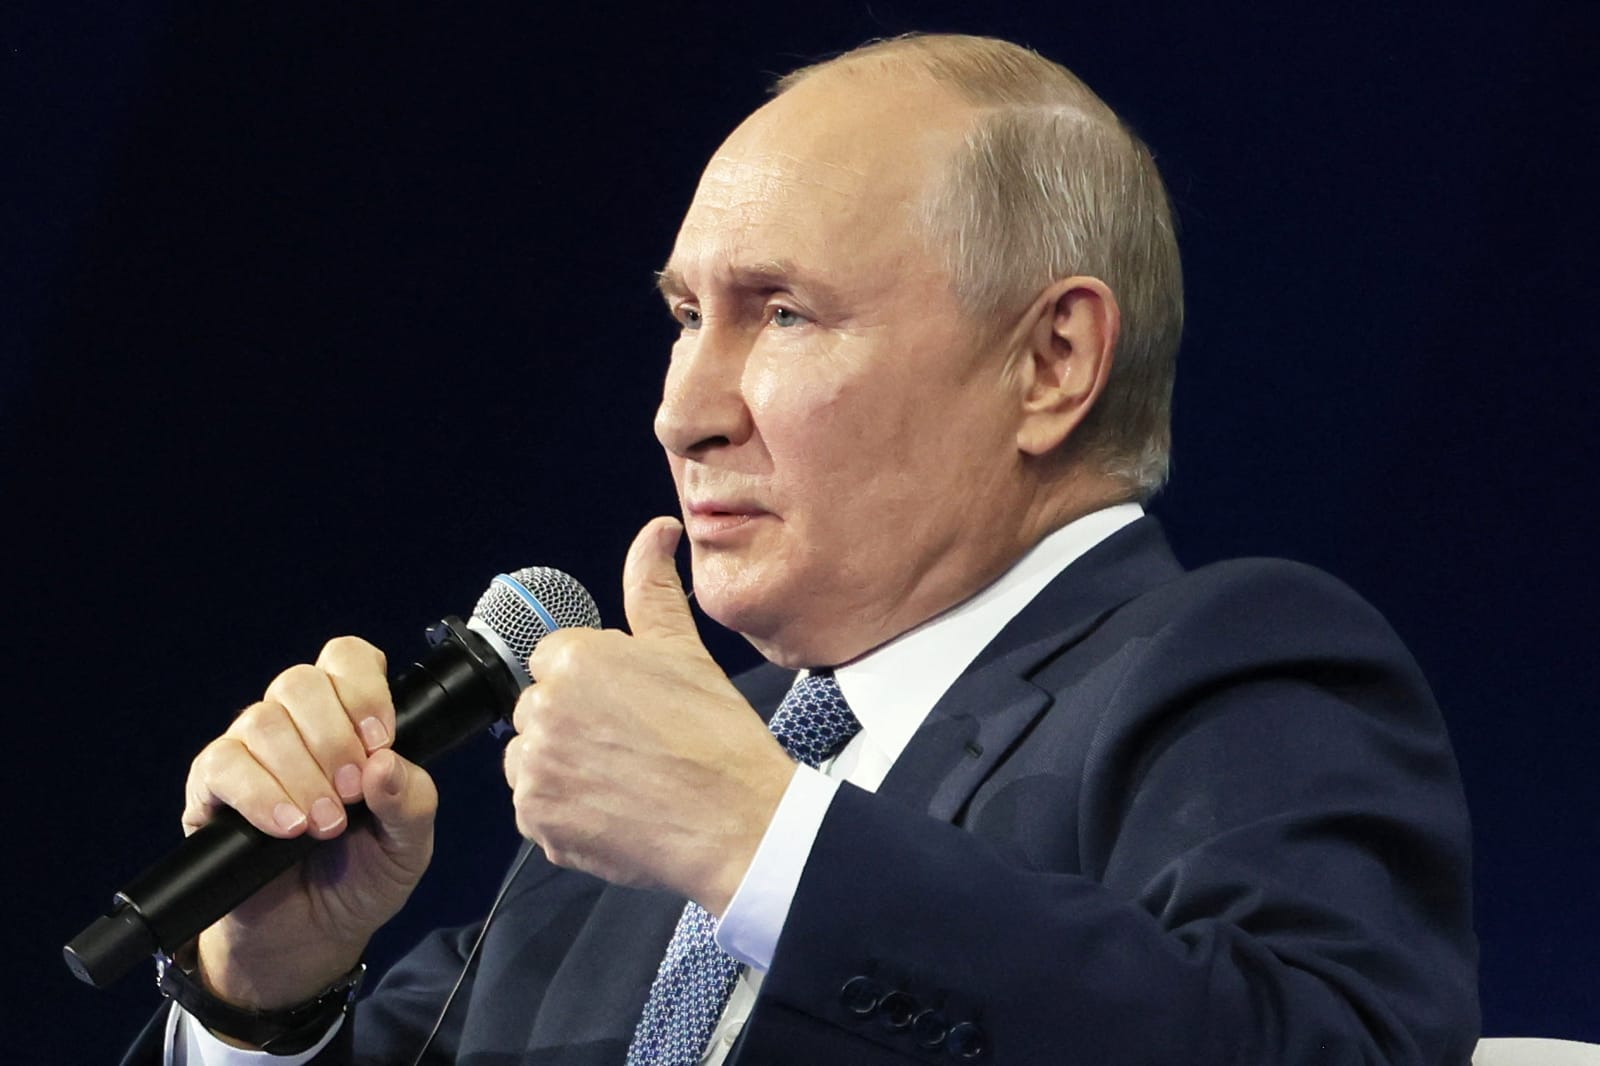 Putin iese afară, chiar și cu un mandat internațional de arestare atârnând deasupra capului său